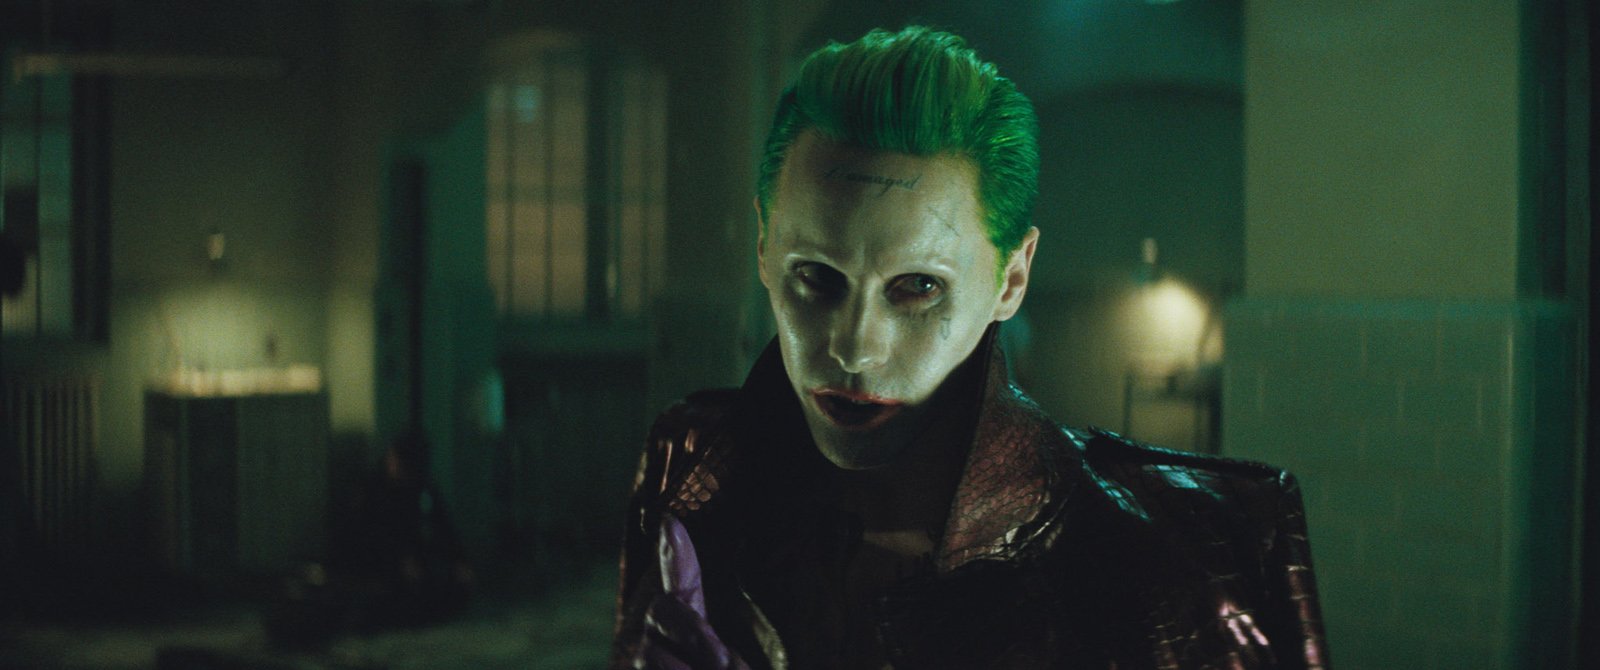 Joker (Jared Leto) - Suicide Squad 